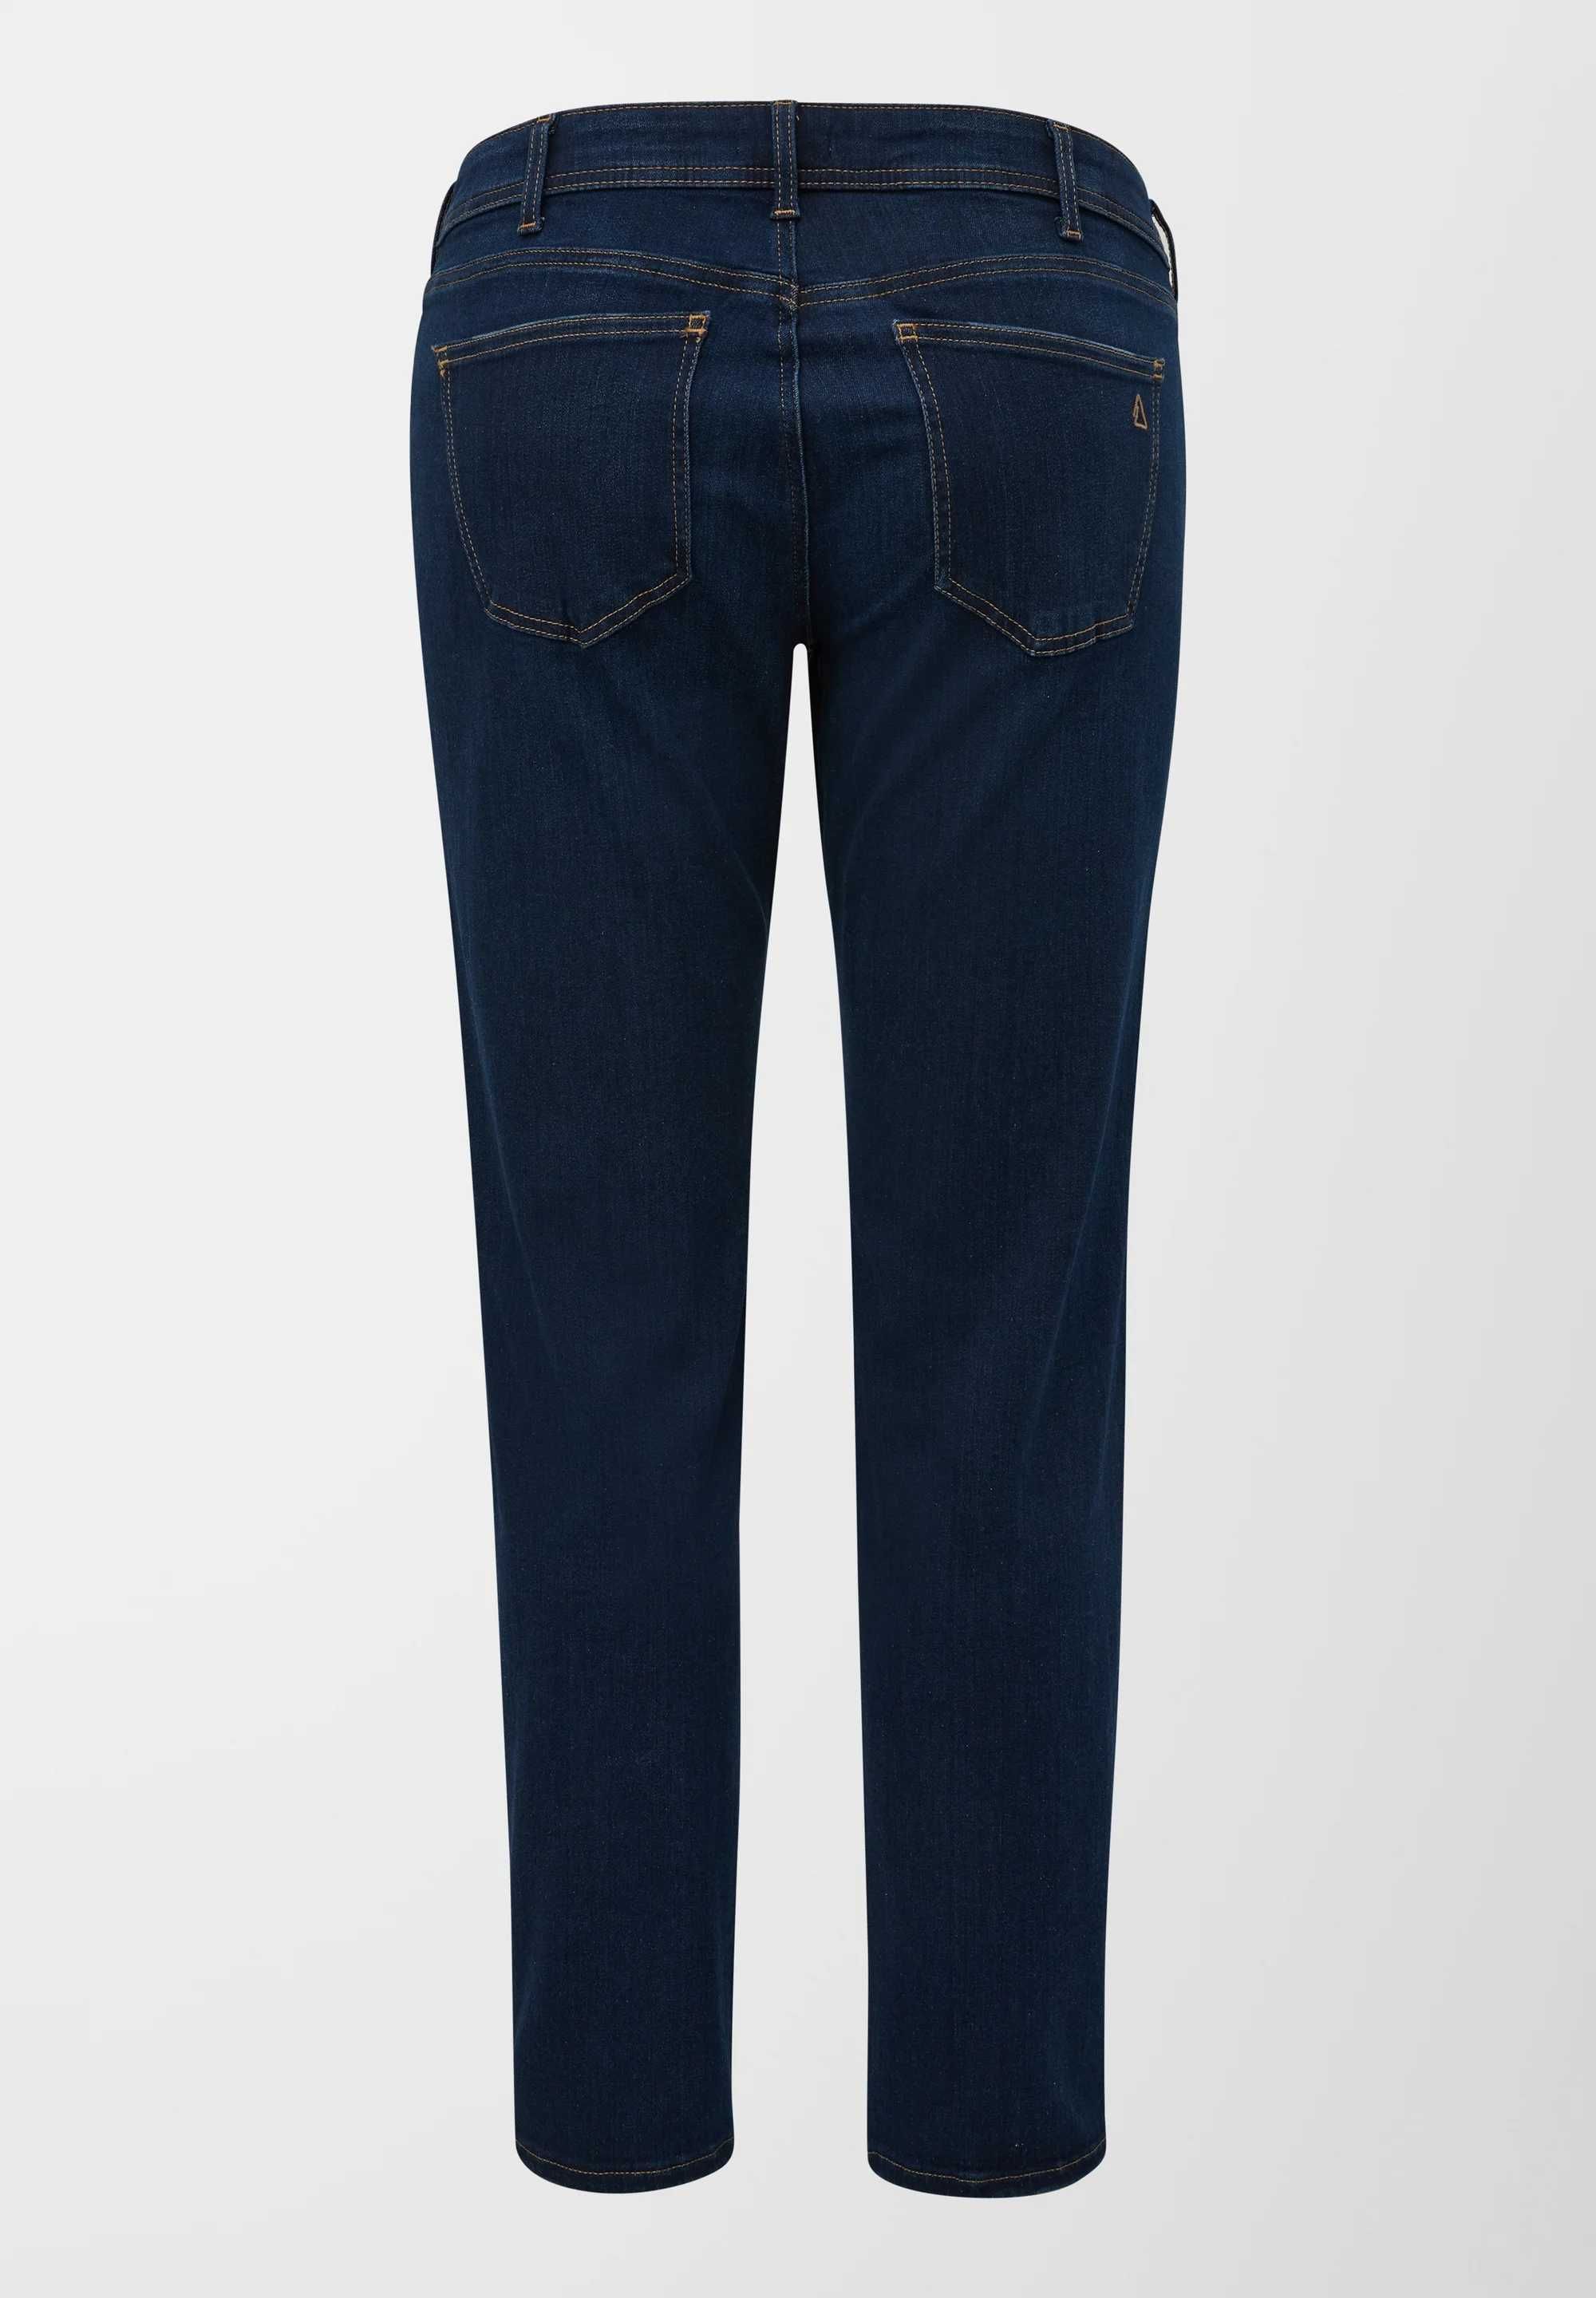 Nowe jeansy damskie premium s.Oliver/Tringle rozm.46/3XL